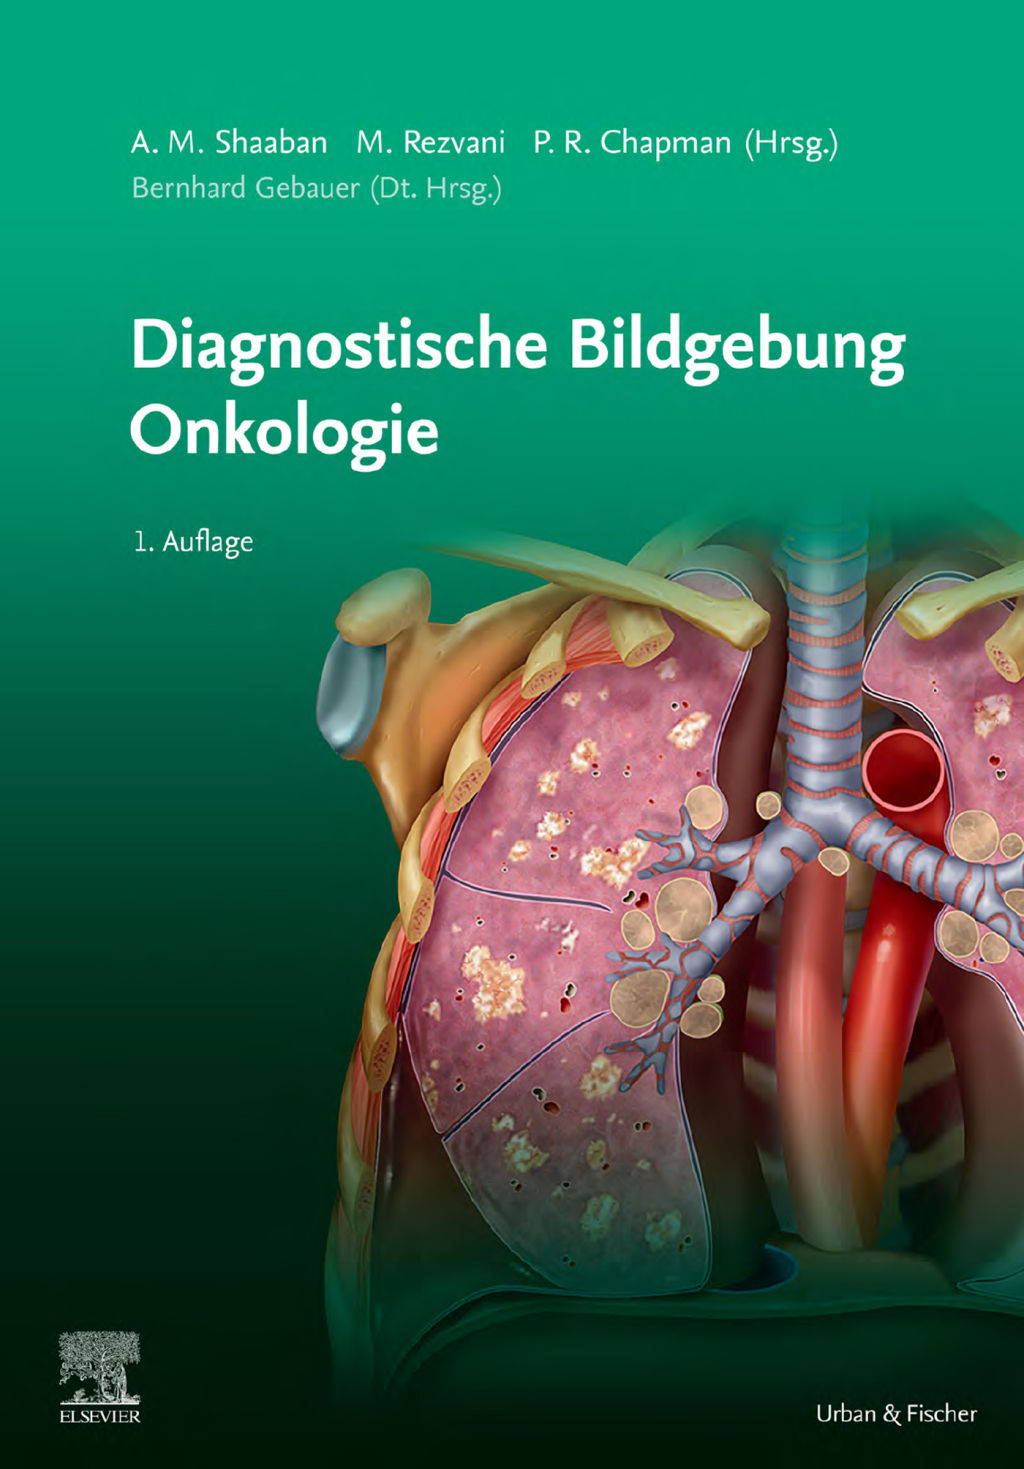 Diagnostische Bildgebung Onkologie (PDF)